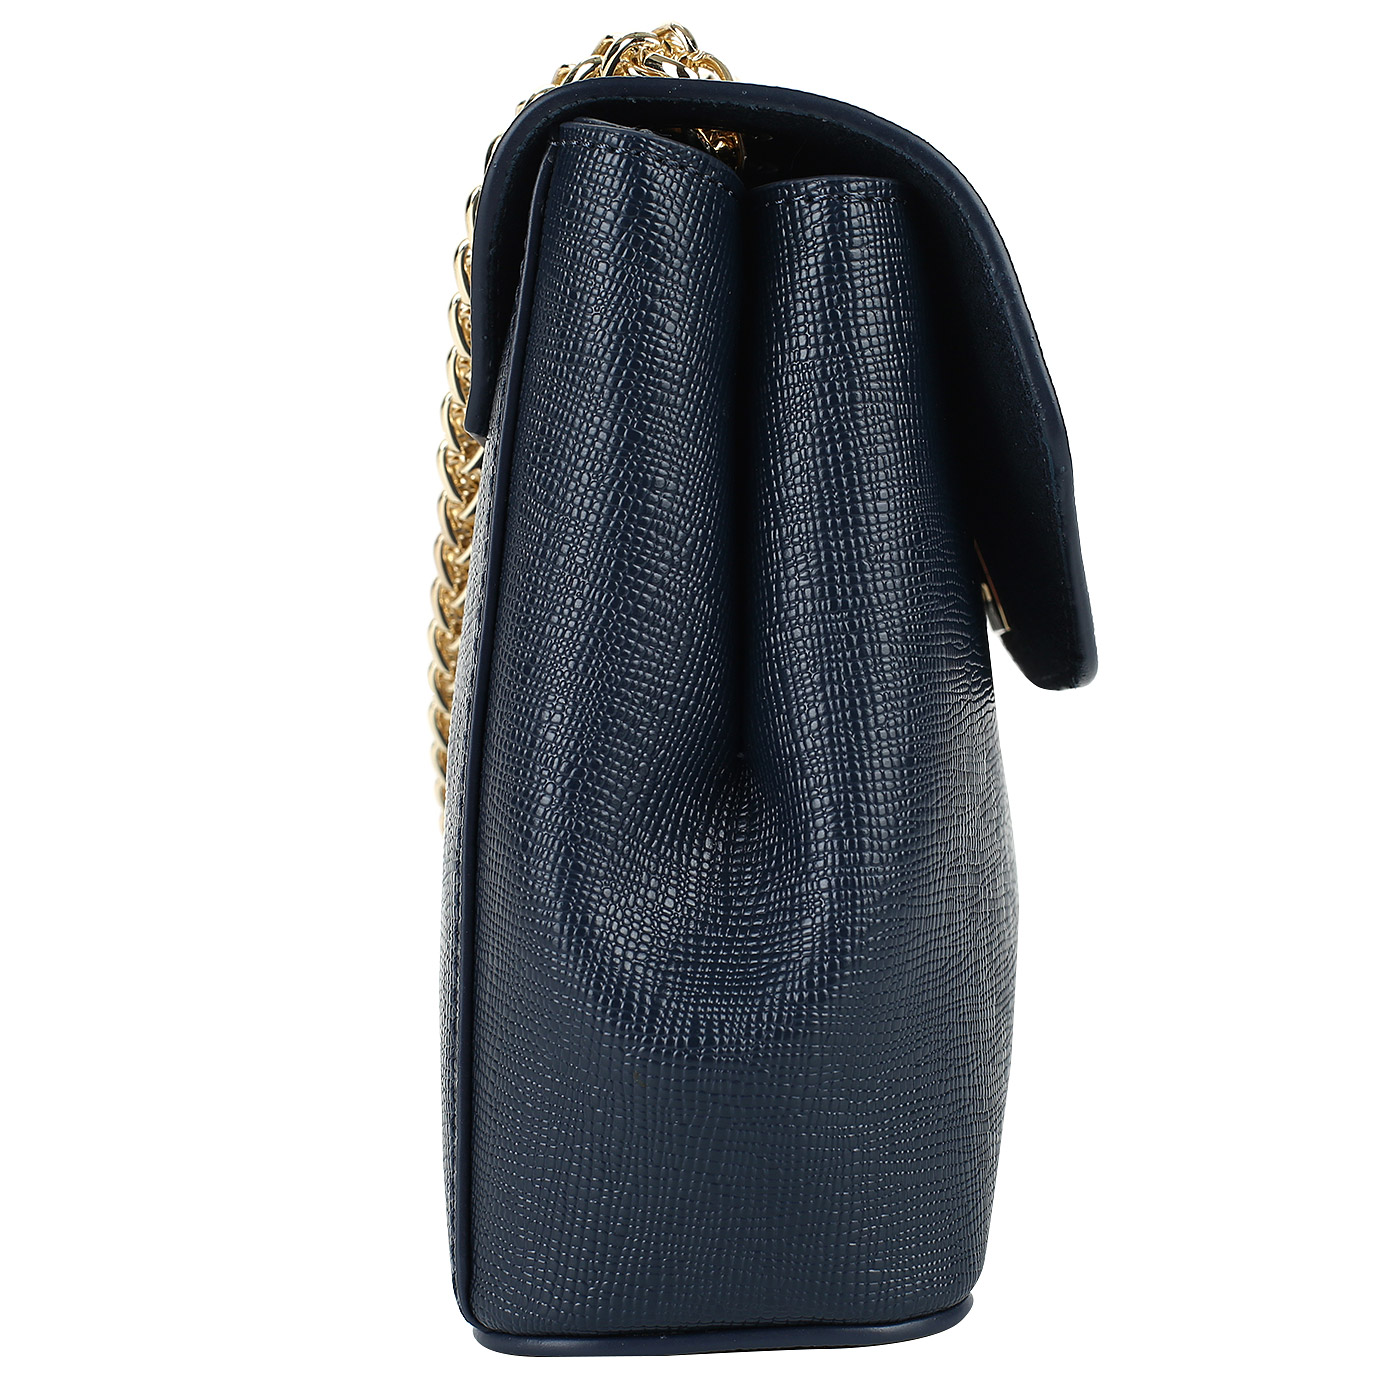 Синяя сафьяновая сумочка с откидным клапаном Cromia Mina